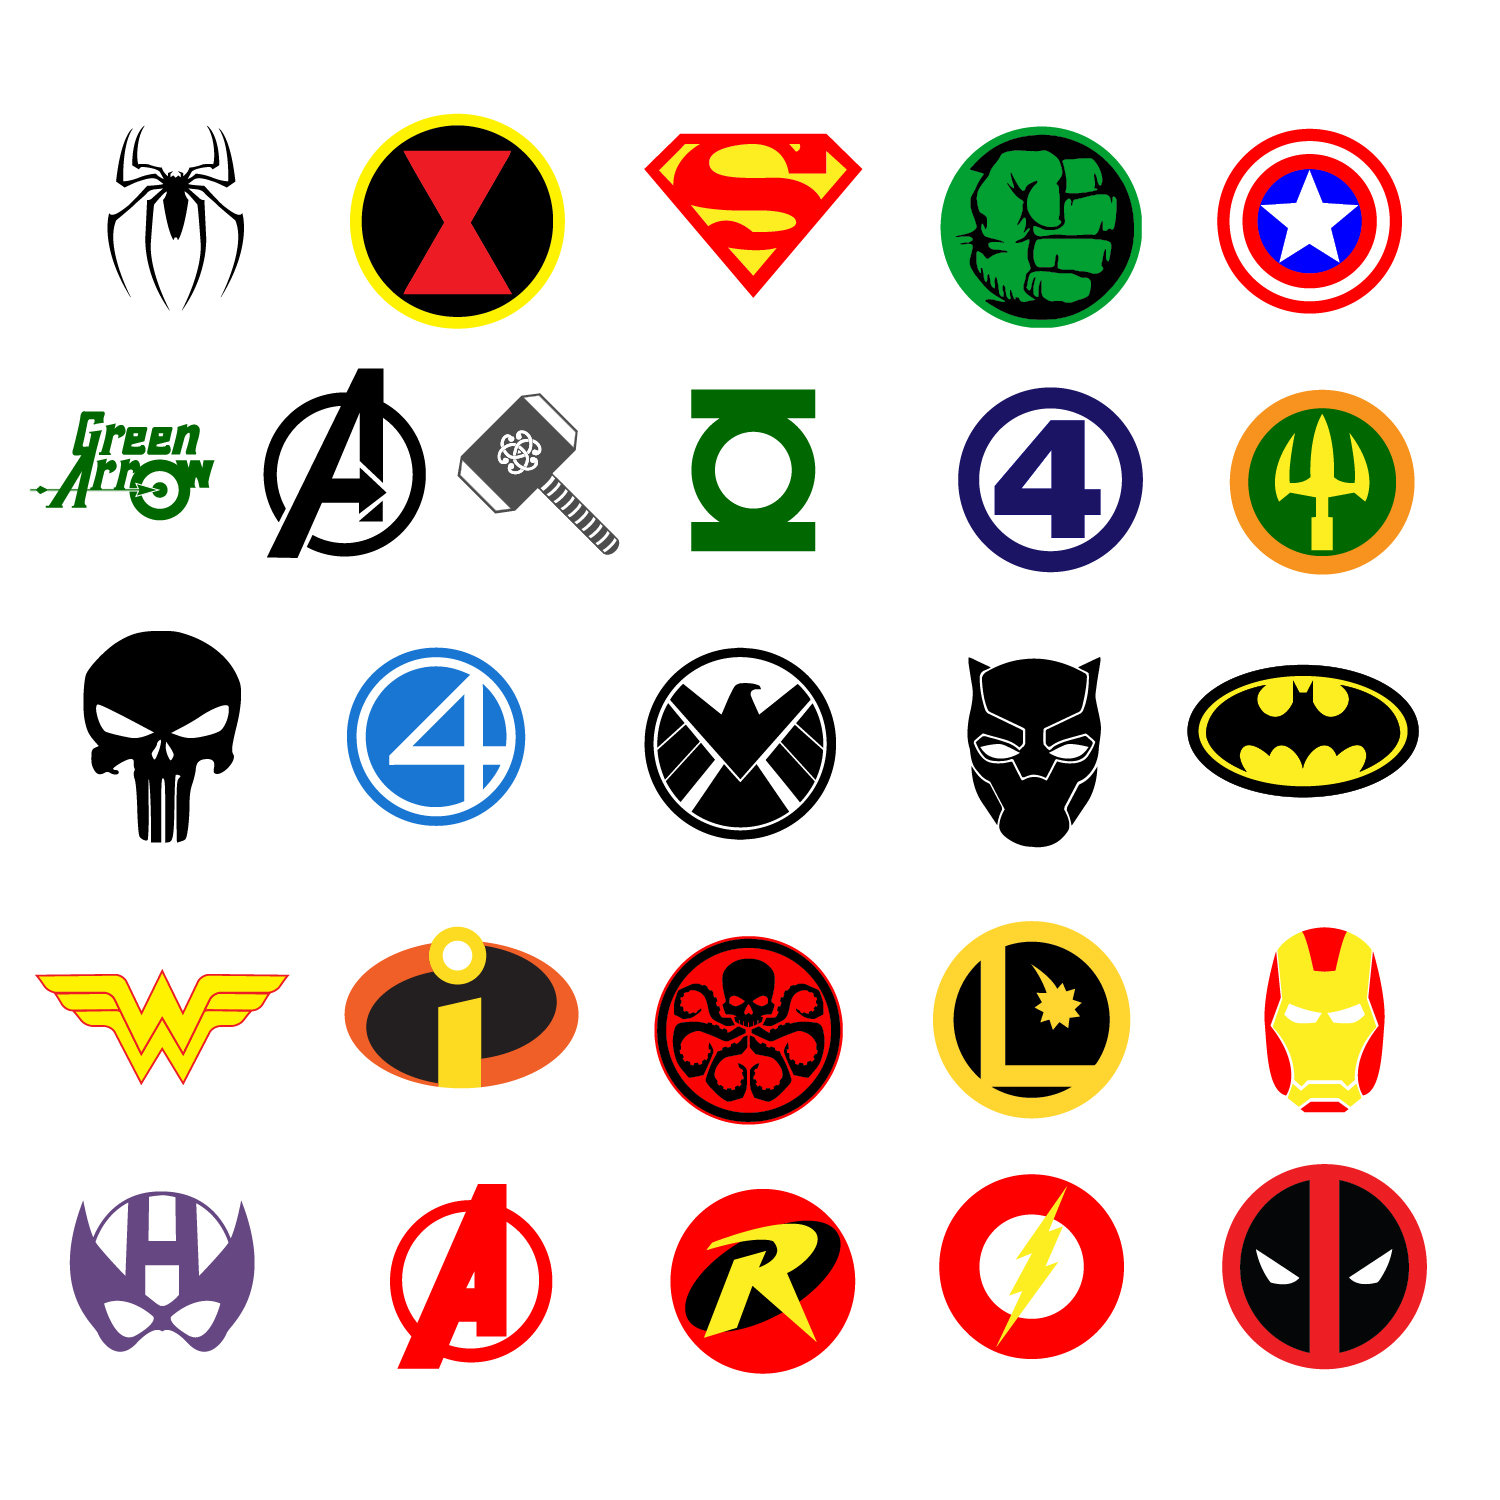 Marvel vector, Avengers, Superhero logo- File For Cut,Cricut,Silhouette,Svg,Dxf,E...